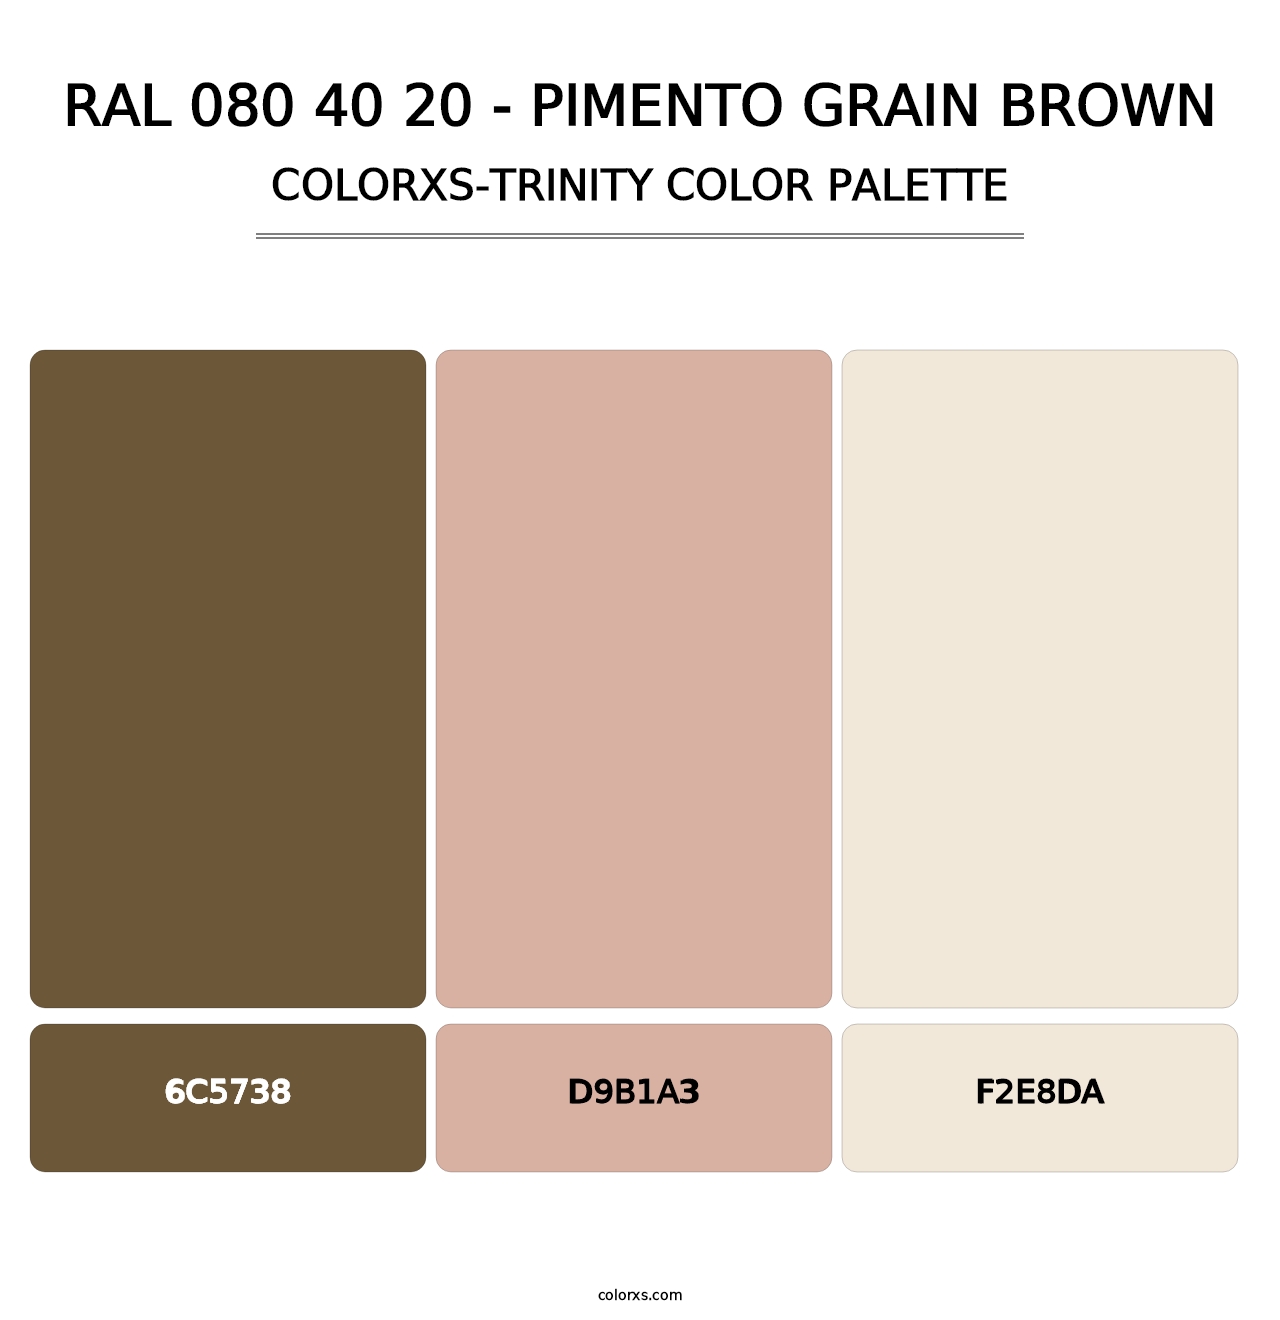 RAL 080 40 20 - Pimento Grain Brown - Colorxs Trinity Palette